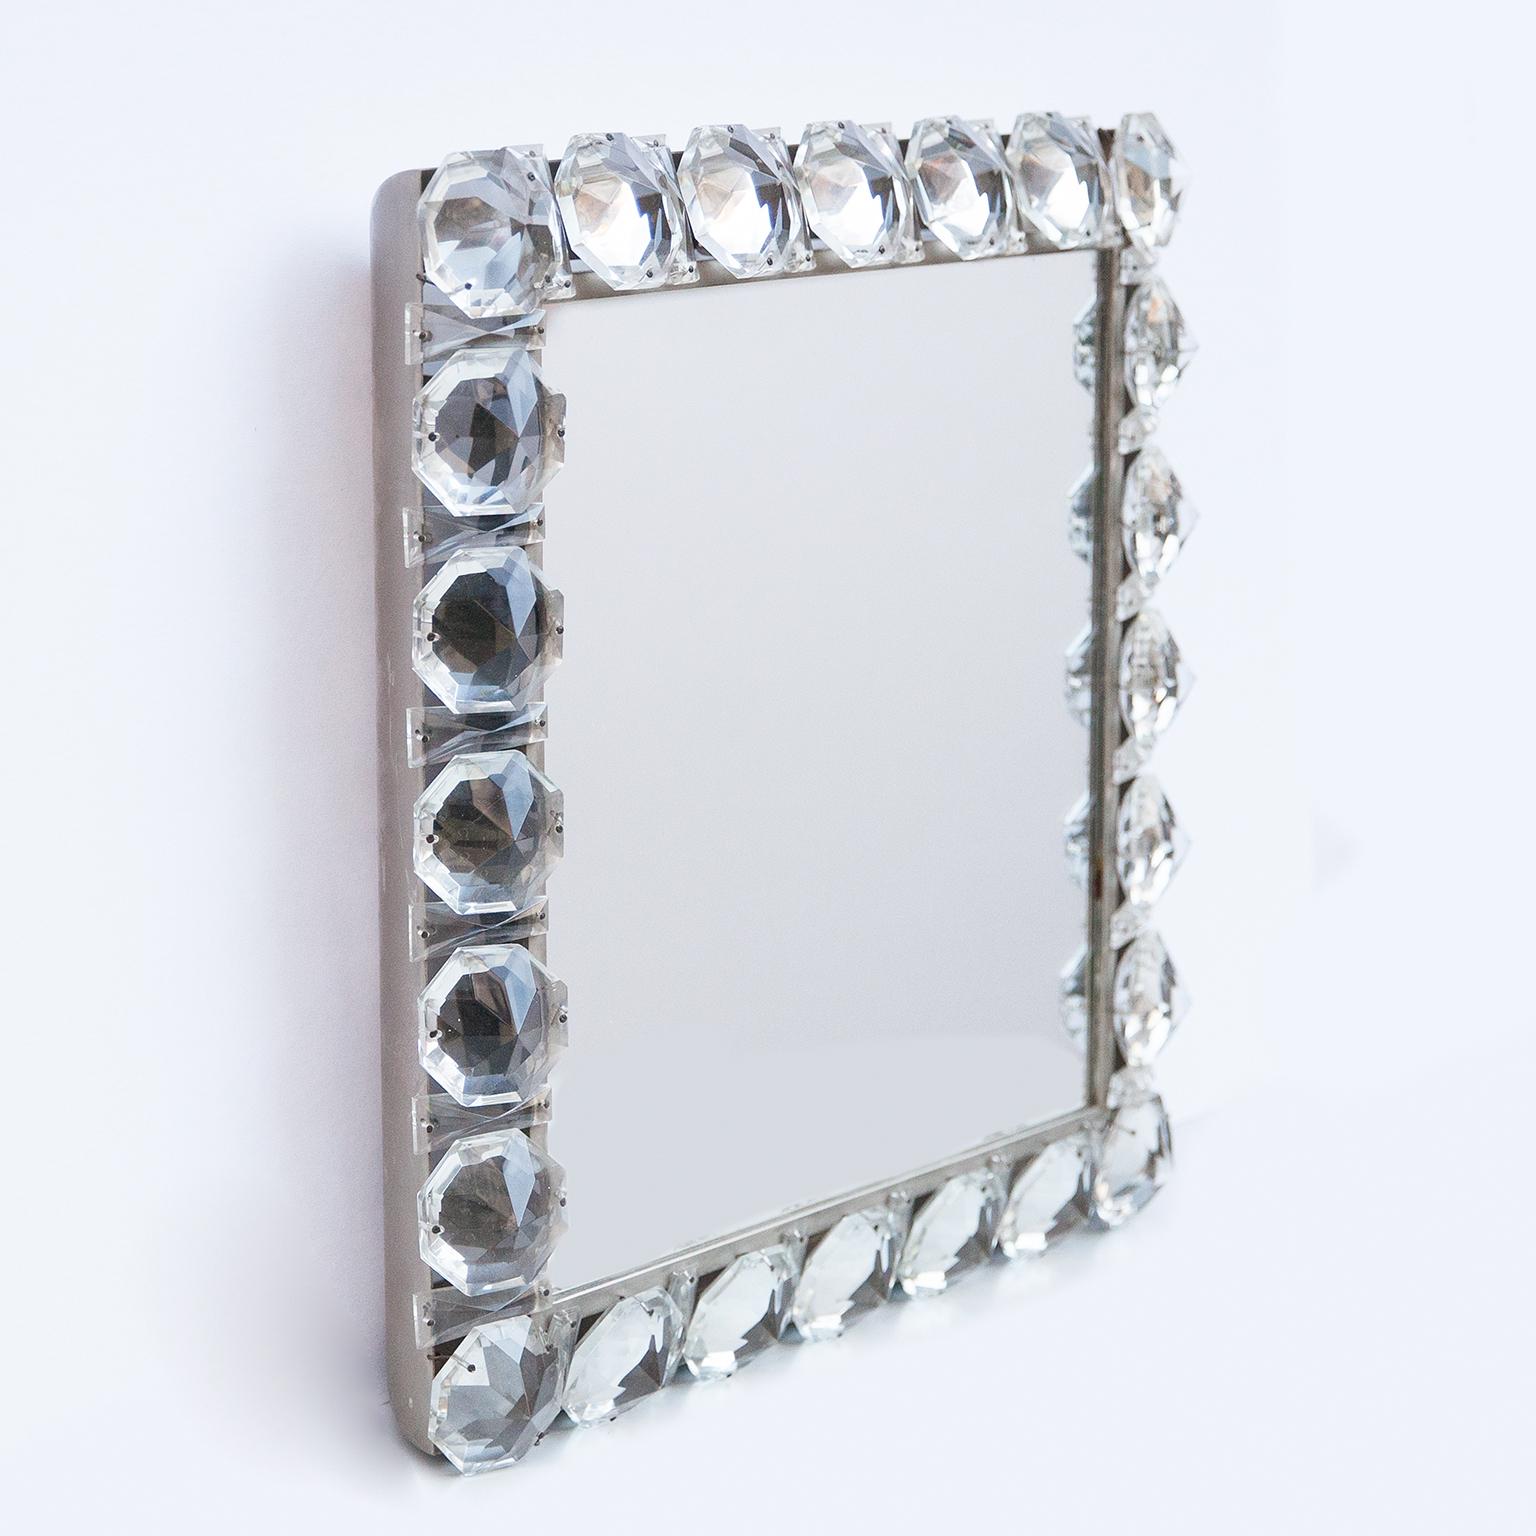 Wunderschöner hinterleuchteter Spiegel mit Glasperlen aus Bakalowits, Österreich 1960er Jahre.

 In quadratischer Form, Chrom und Kristallglas. Can auch als Schminkspiegel in Ihrem Gästebad mit fantastischen Lichteffekten verwendet werden.